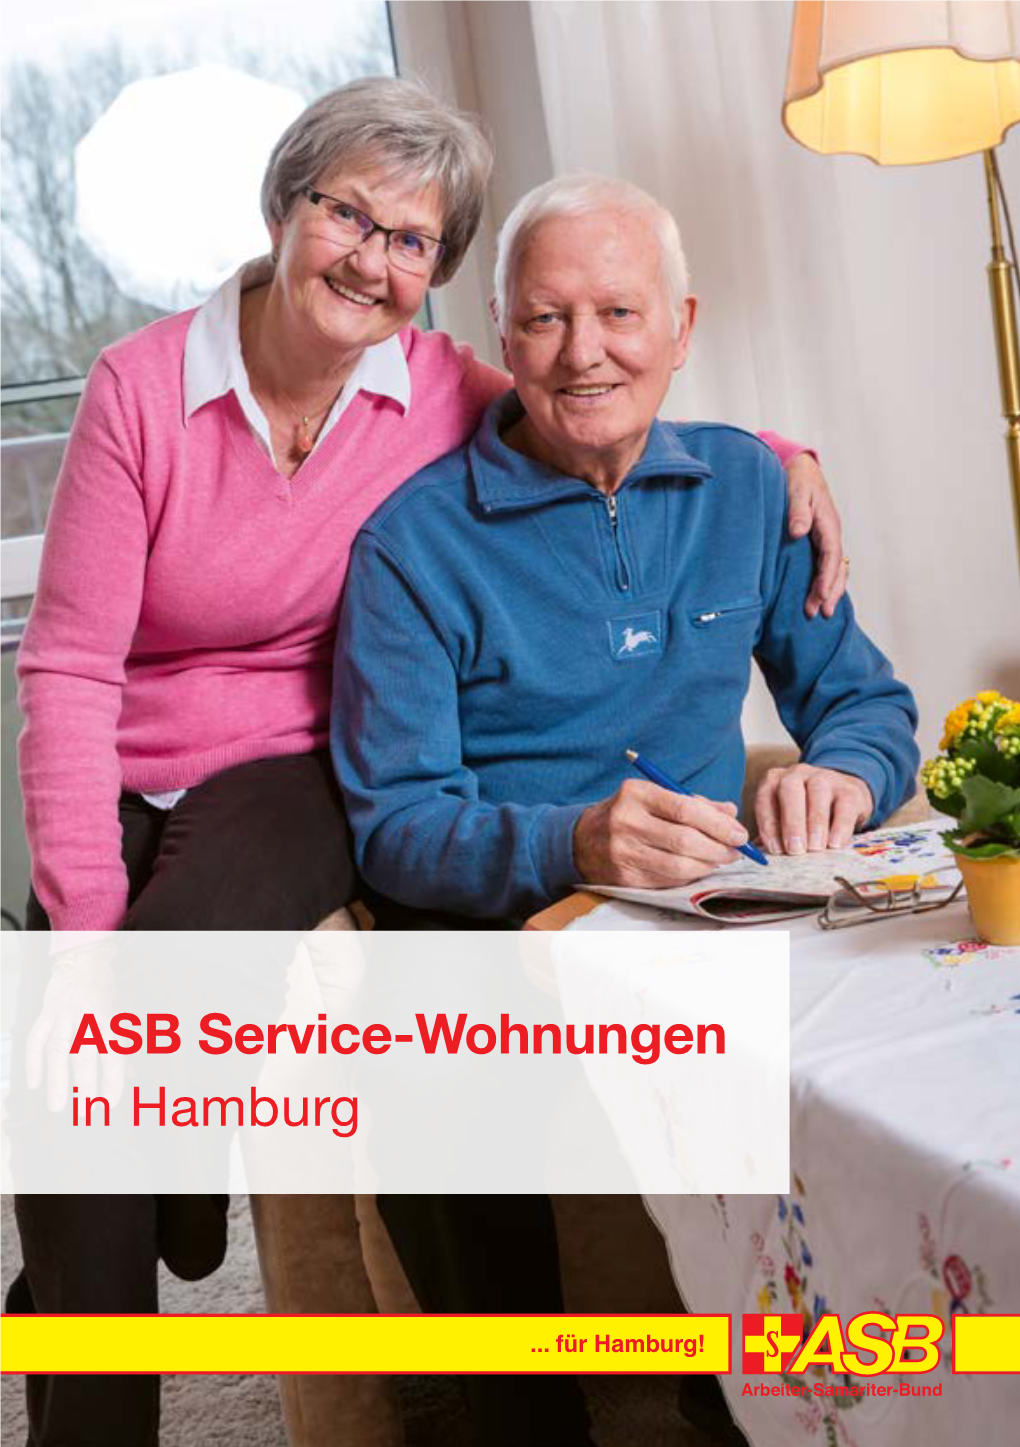 ASB Service-Wohnungen in Hamburg Liebe Leserin, Lieber Leser